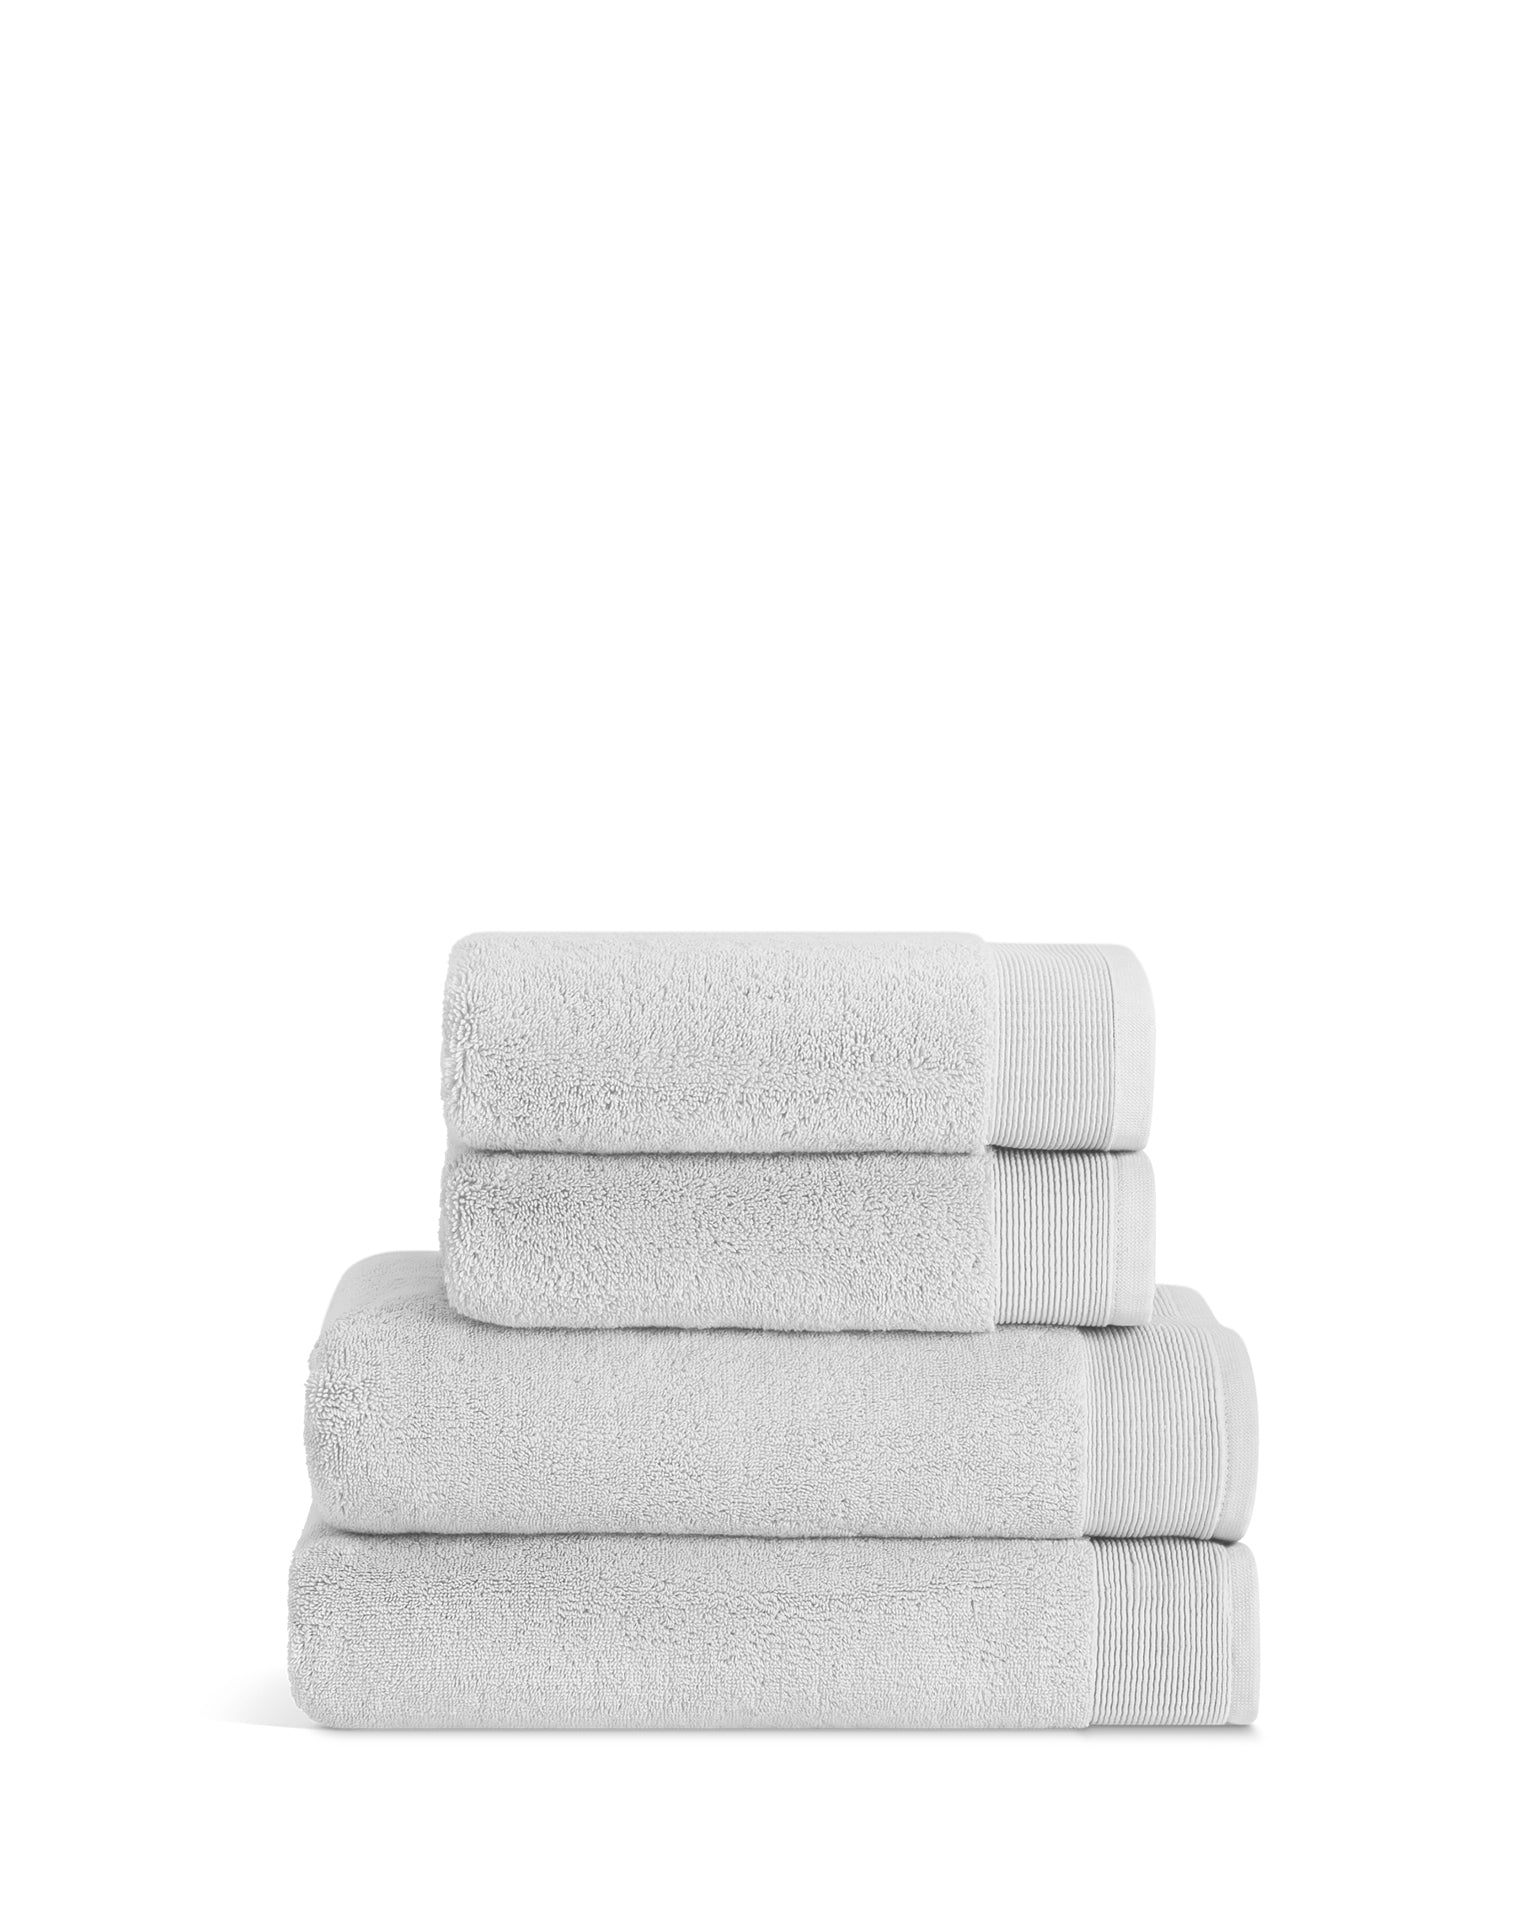 Plush Bath Towel